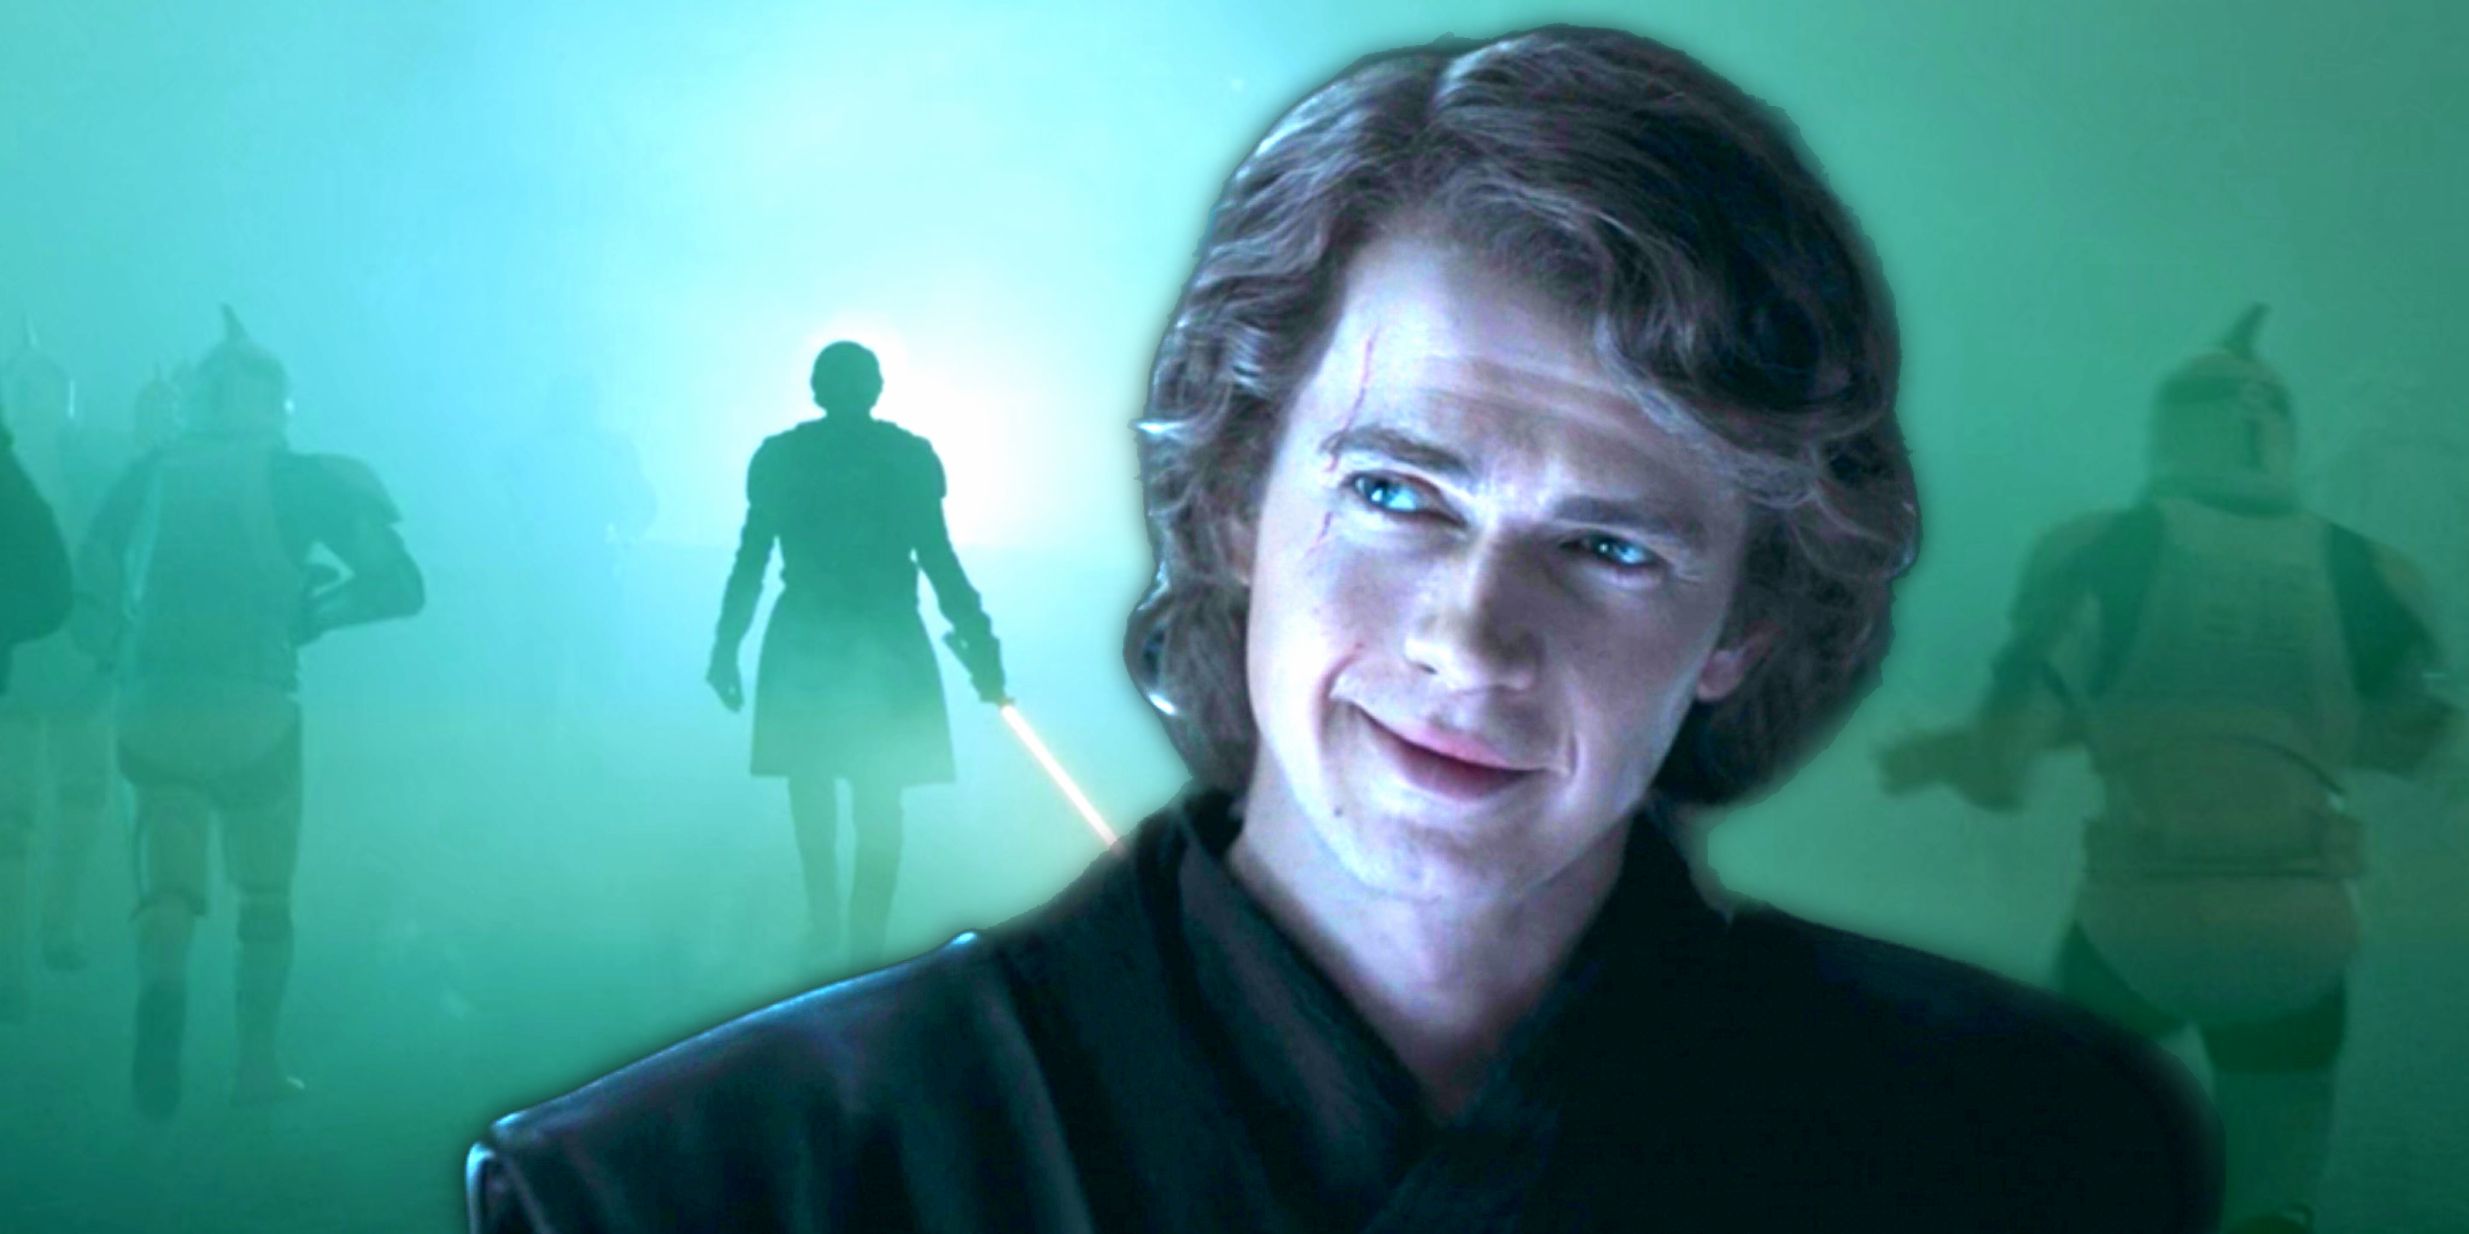 Hayden Christensen smiling as Anakin Skywalker in Ahsoka